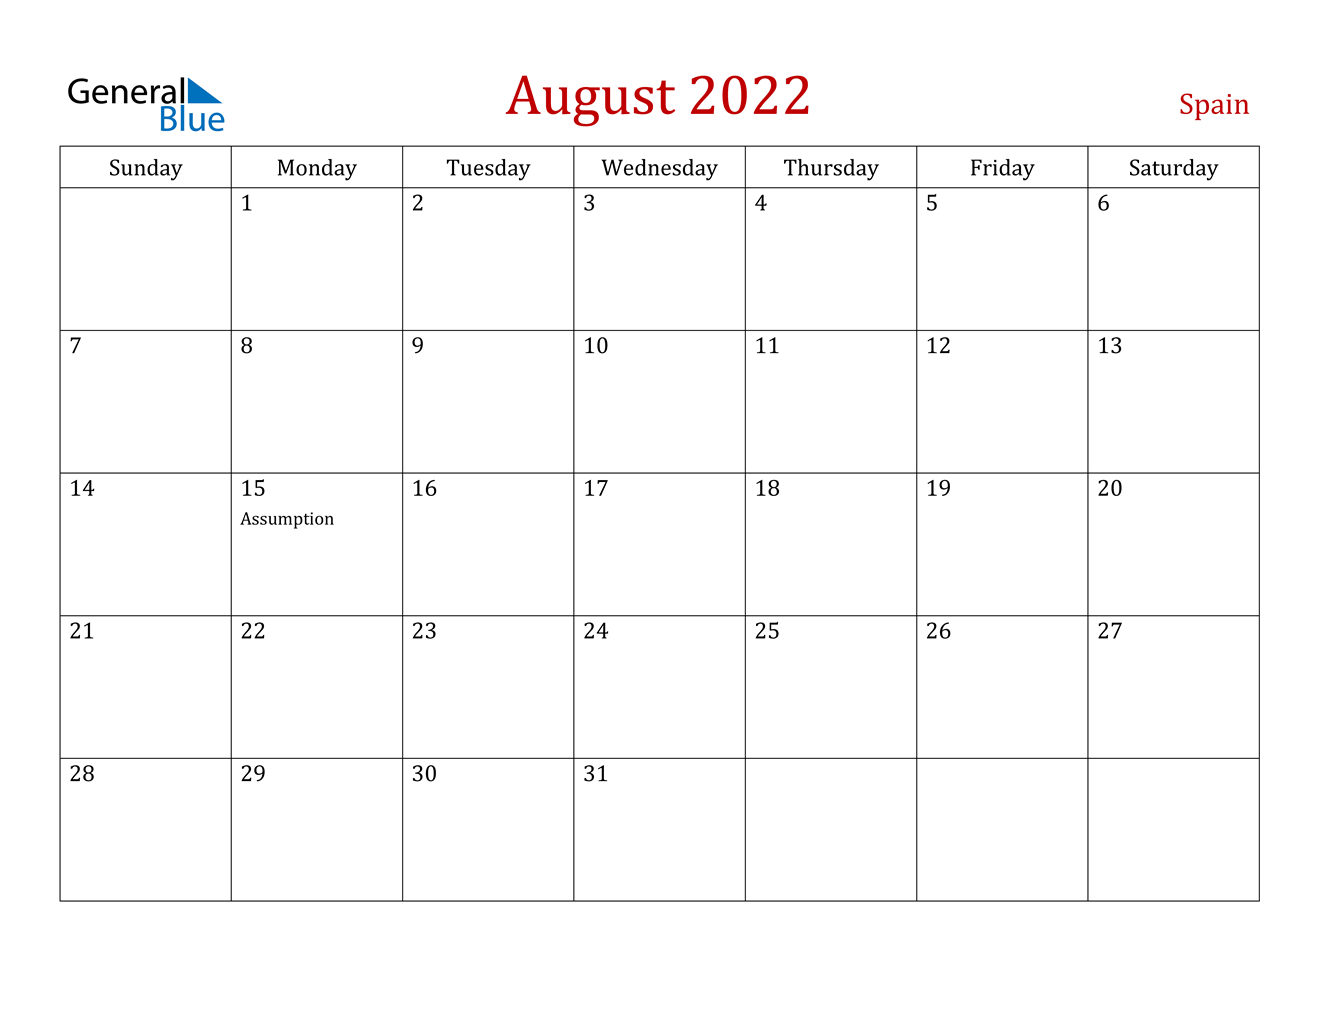 August 2022 Calendar - Spain